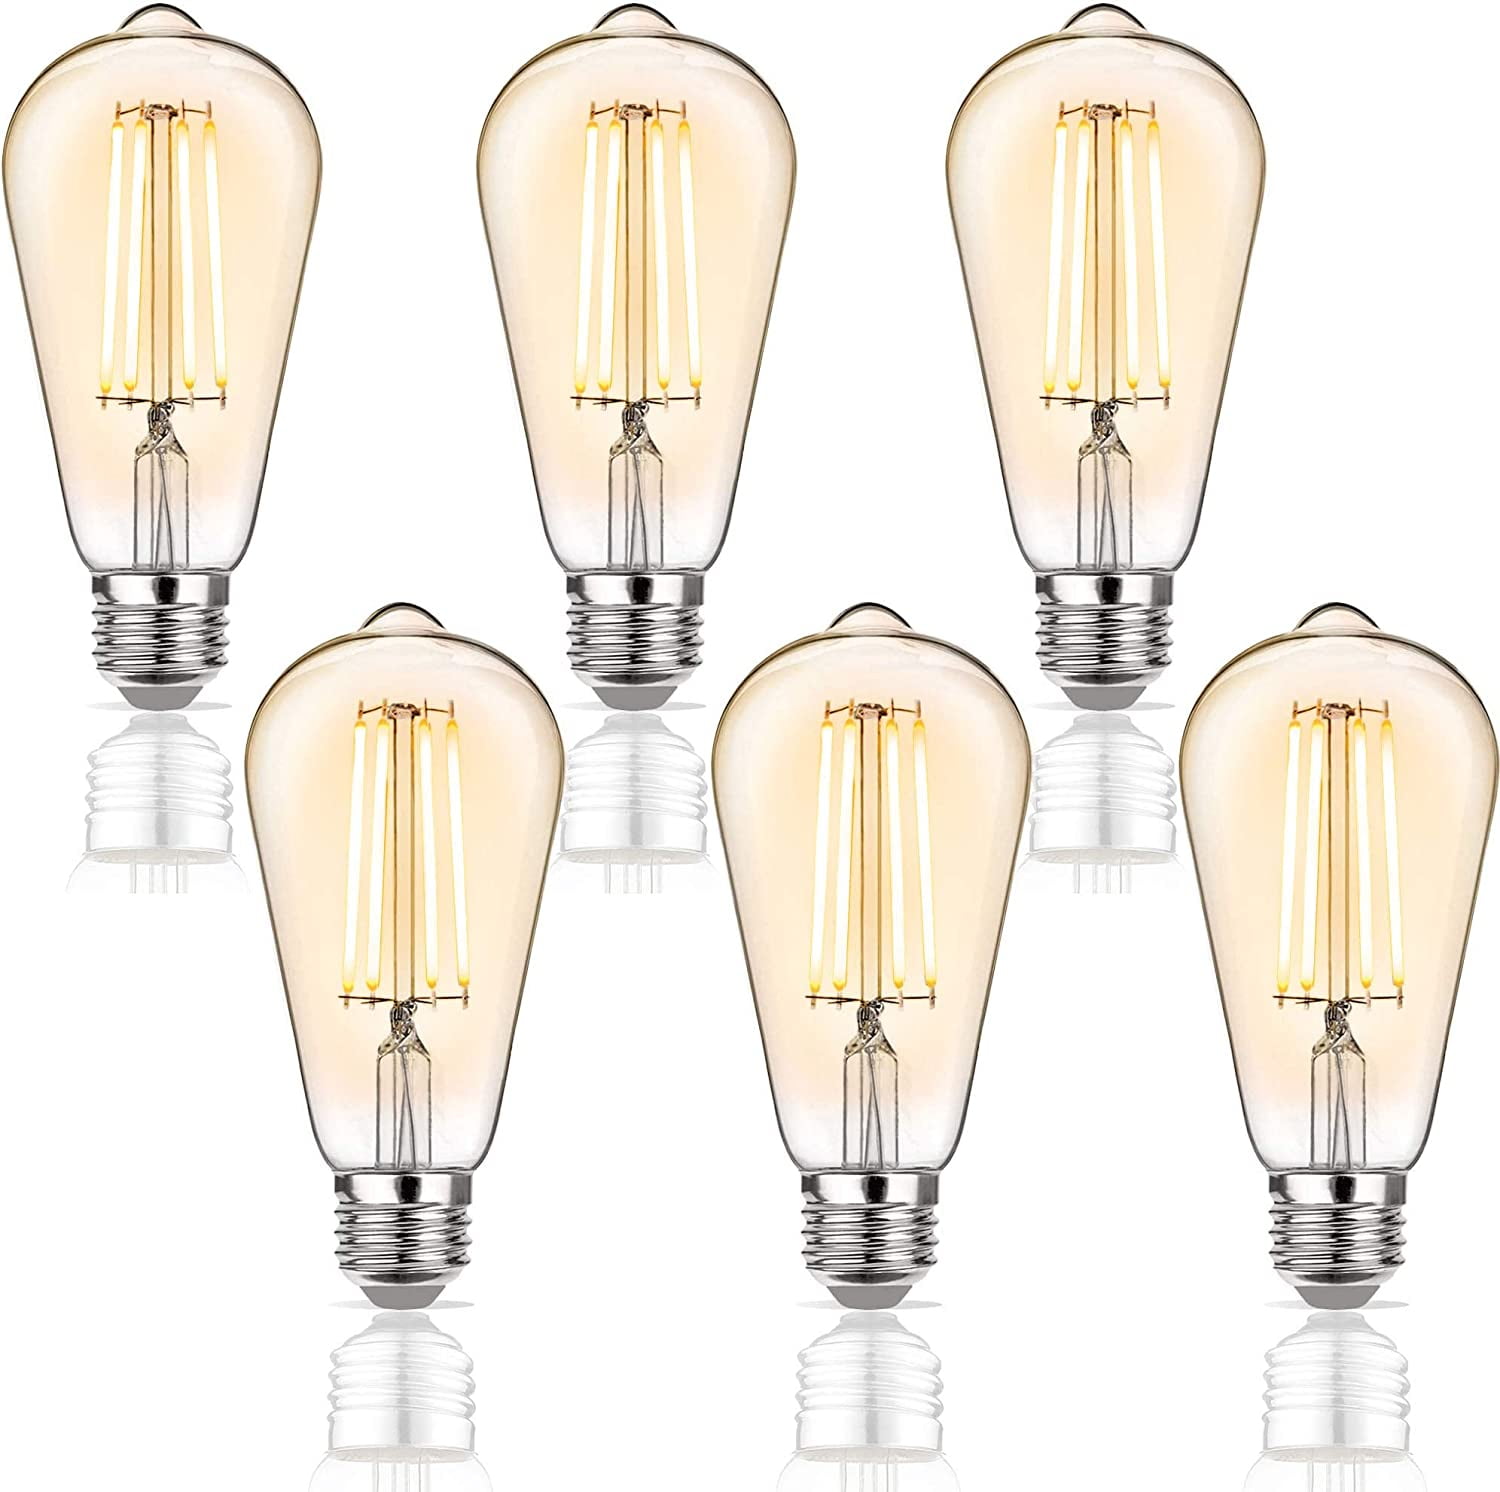 gemakkelijk ik ben trots Op de grond 6 Watt Dimmable LED Edison Light Bulbs - 6W Antique Style Softlight Edison LED  Bulbs - Warm White 2200K (Amber Gold Glass) for Home - Filament Vintage Light  Bulb Set - E26